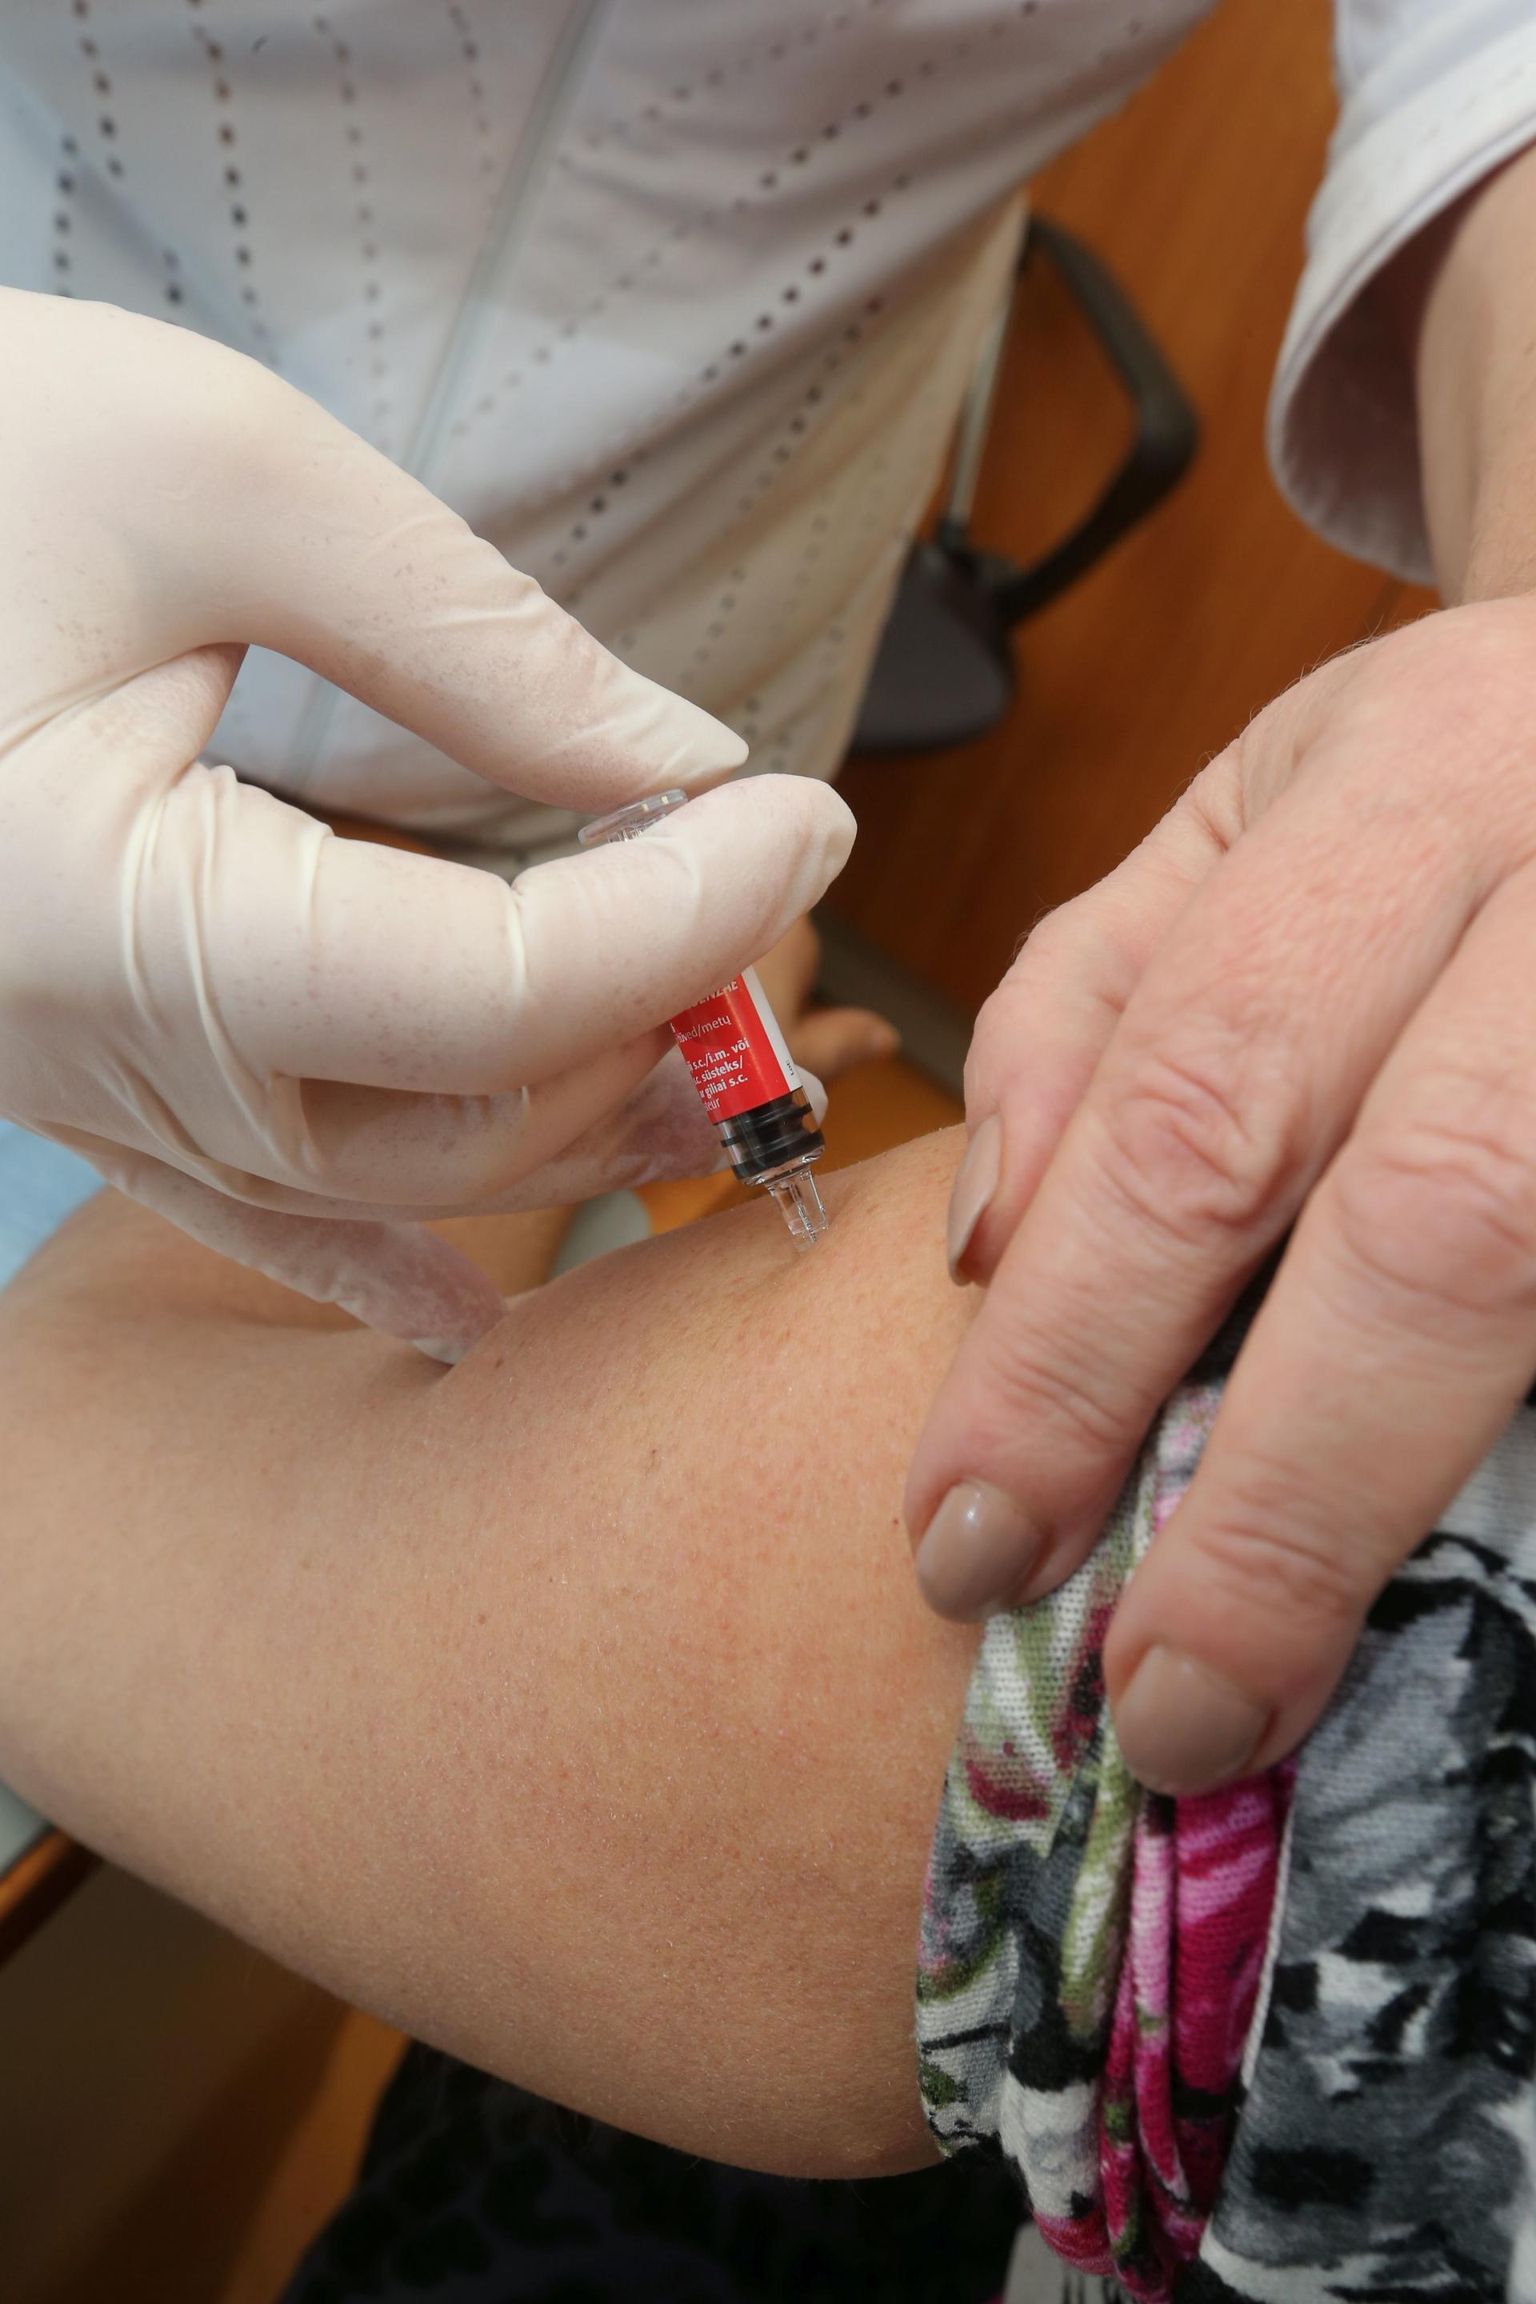 Tänavu on esimene aasta, kus riigi kulul saavad gripi vastu vaktsineerida kõik üle 65-aastased inimesed.